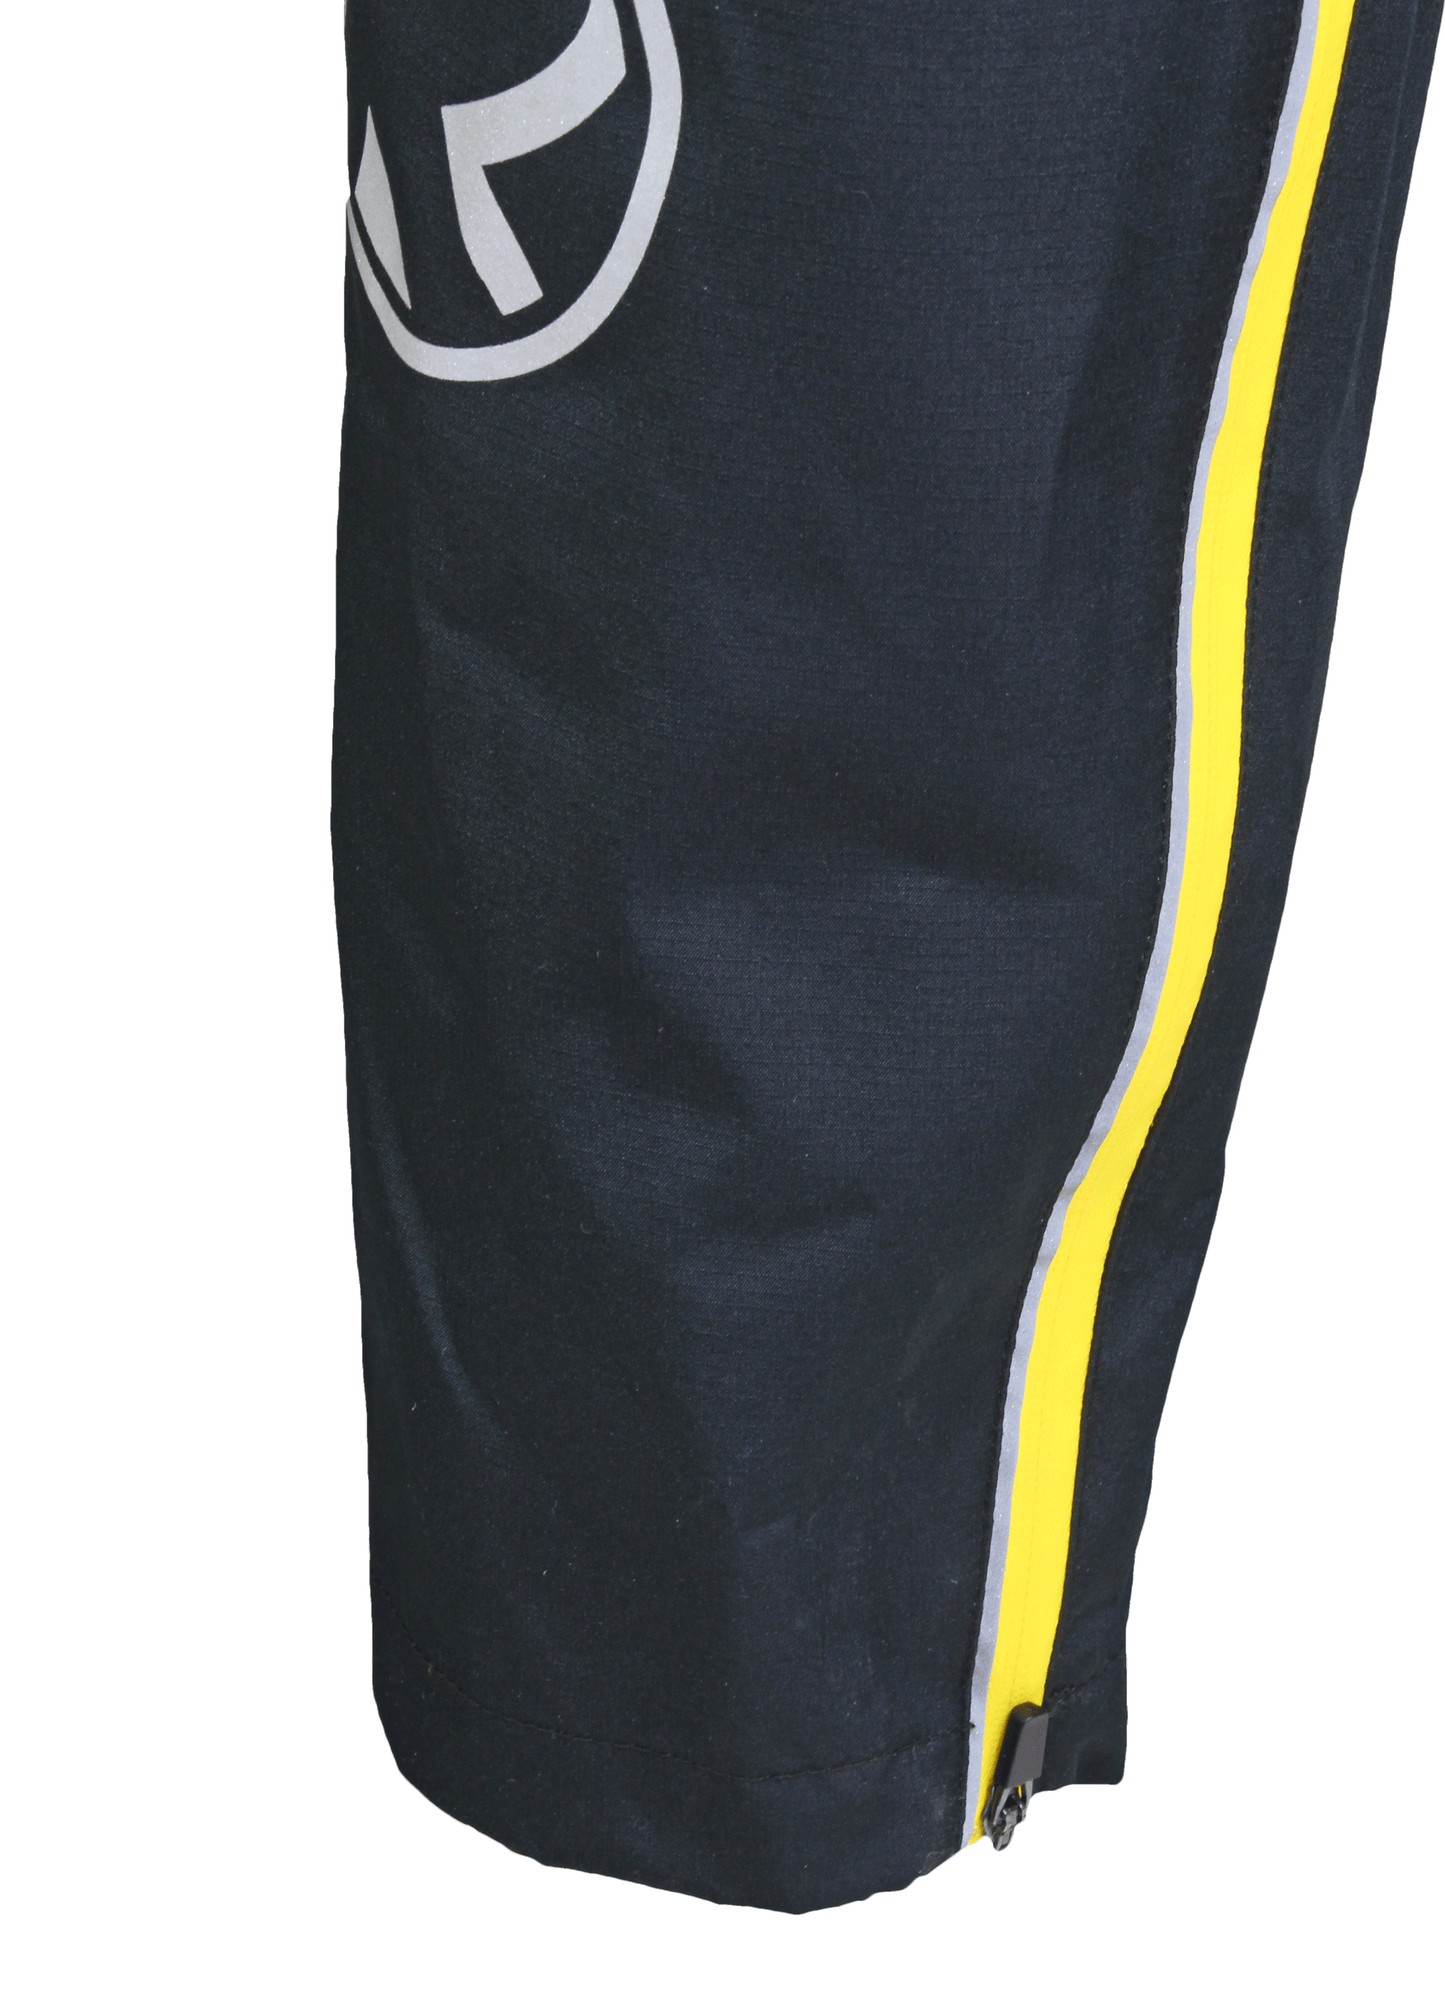 Kit List Waterproof Trousers - Black/Reflect